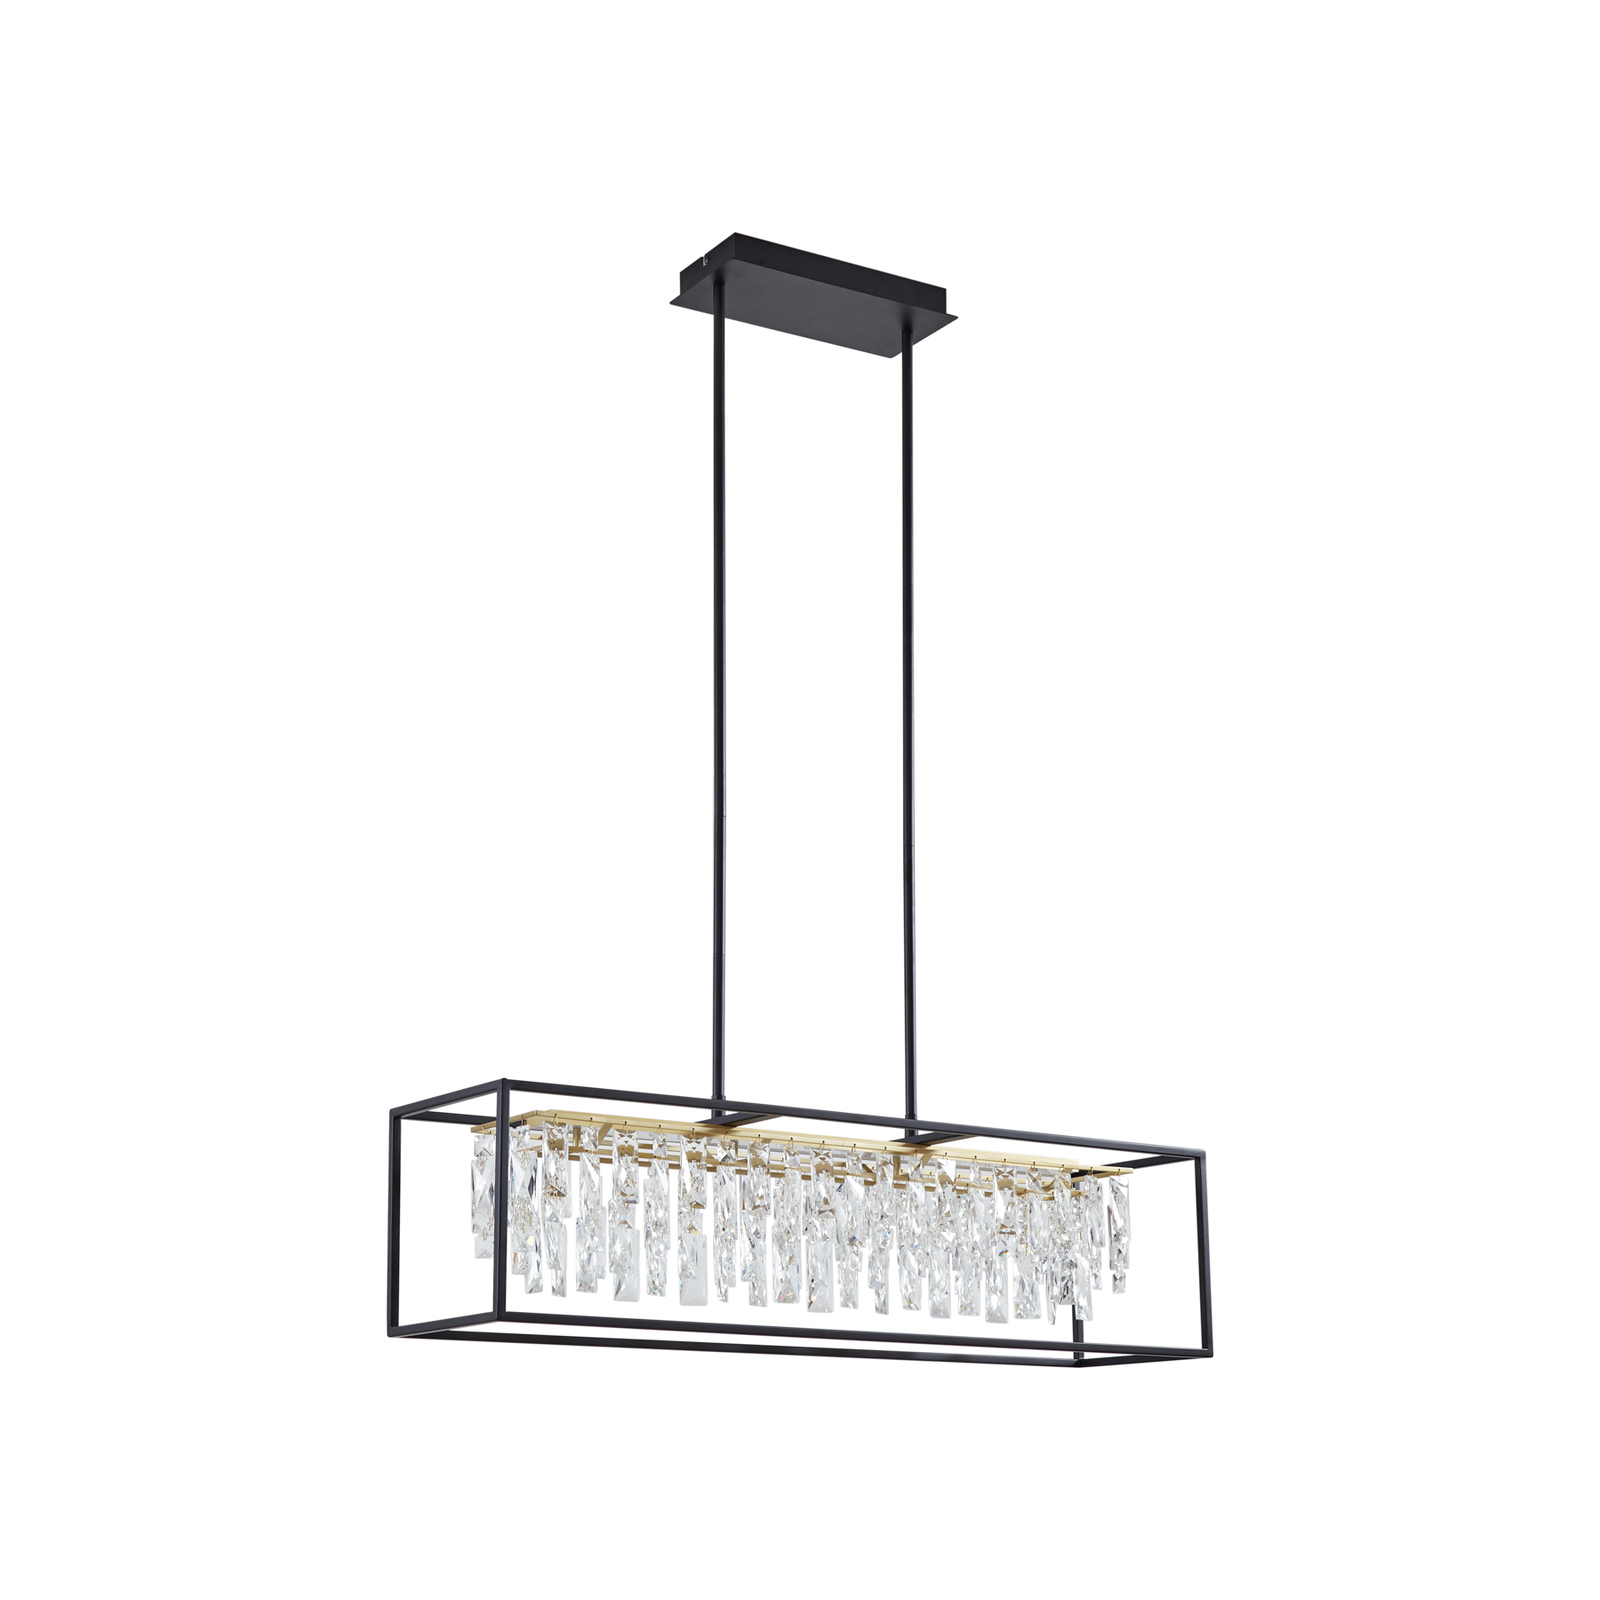 Lucande LED-Hängelampe Kassi, schwarz, Eisen, dimmbar, 90 cm